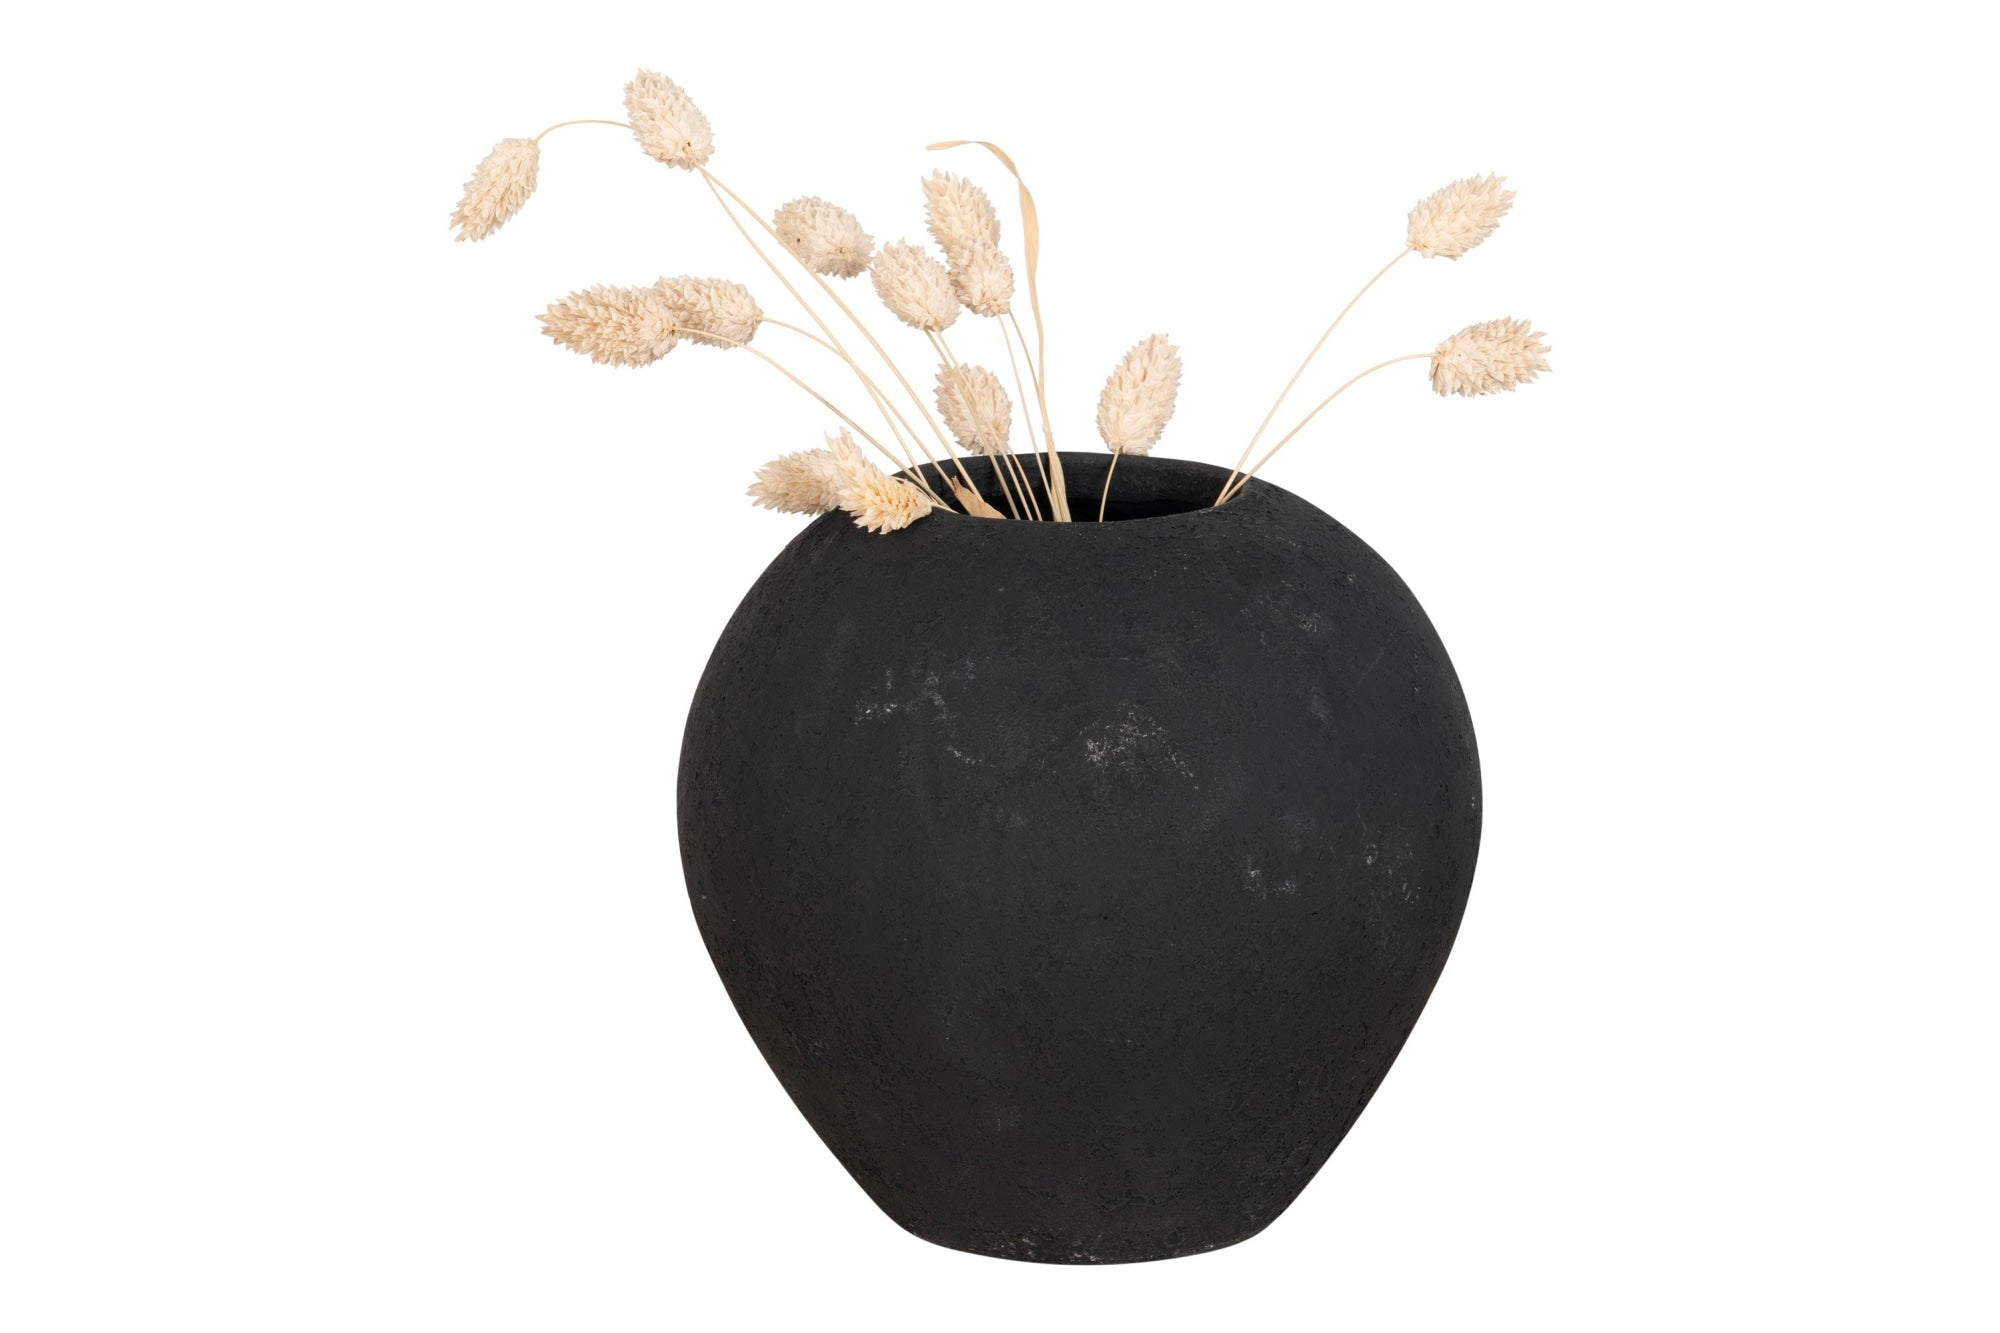 HORTA fekete terracotta váza